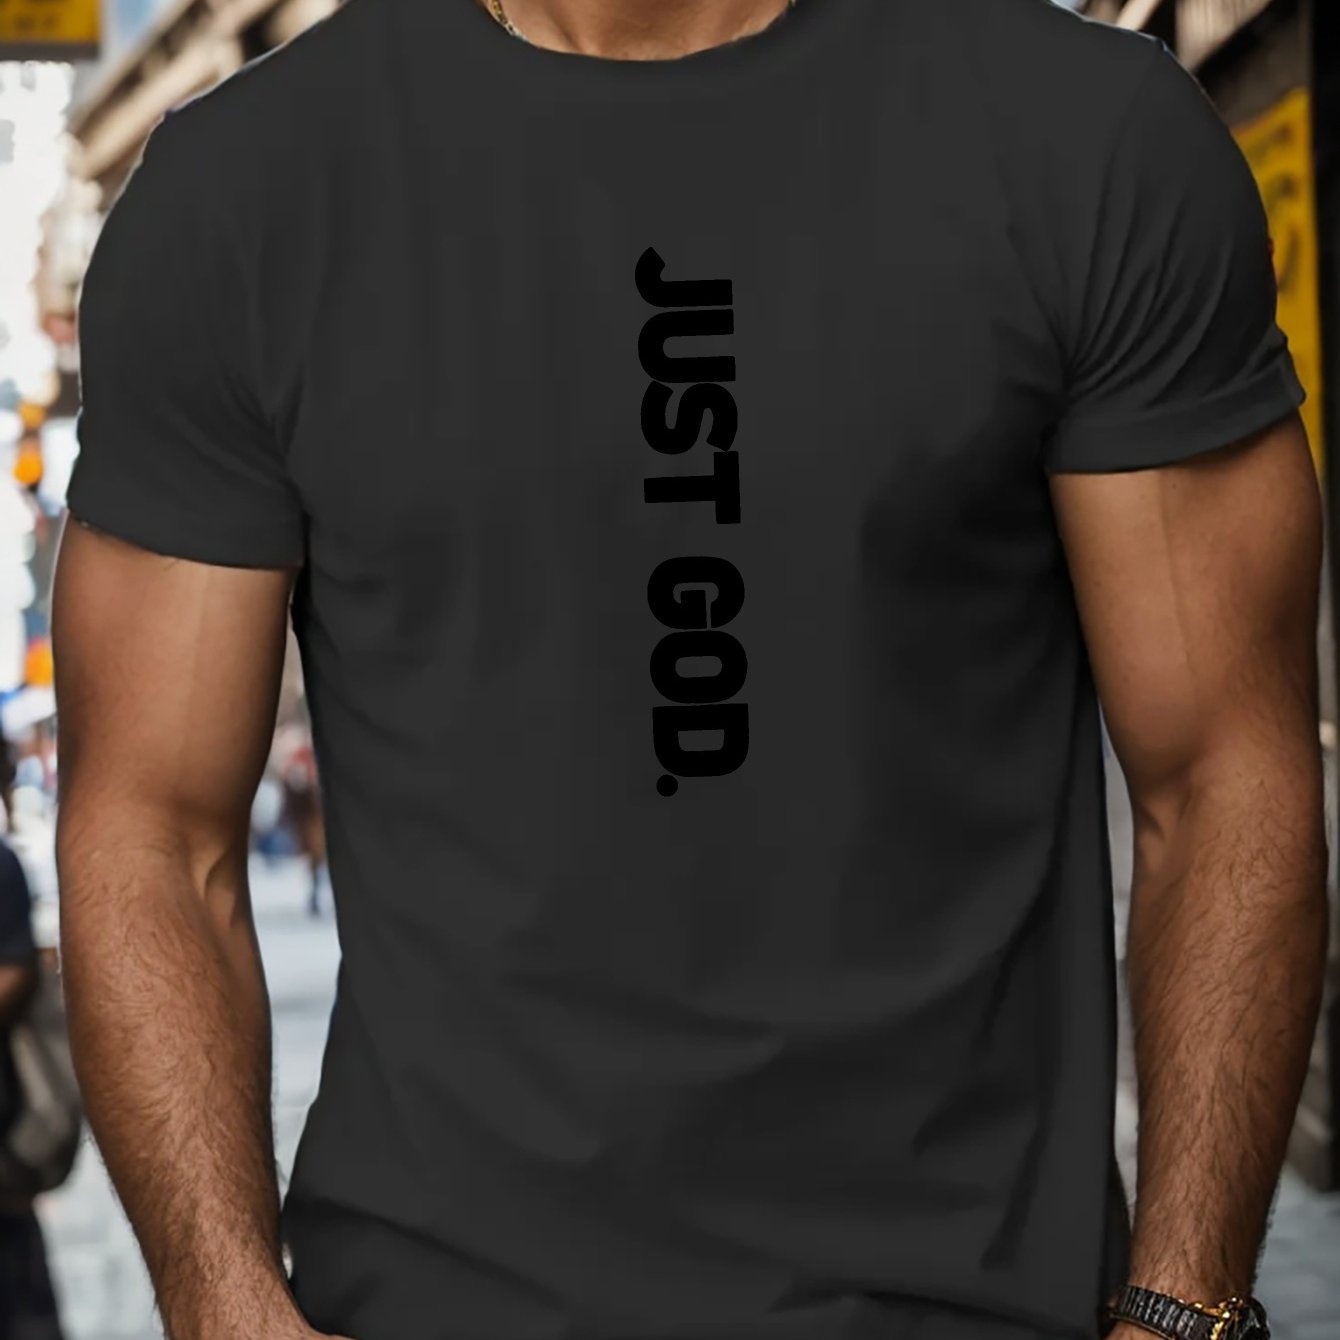 JUST GOD Men's Christian T-Shirt claimedbygoddesigns